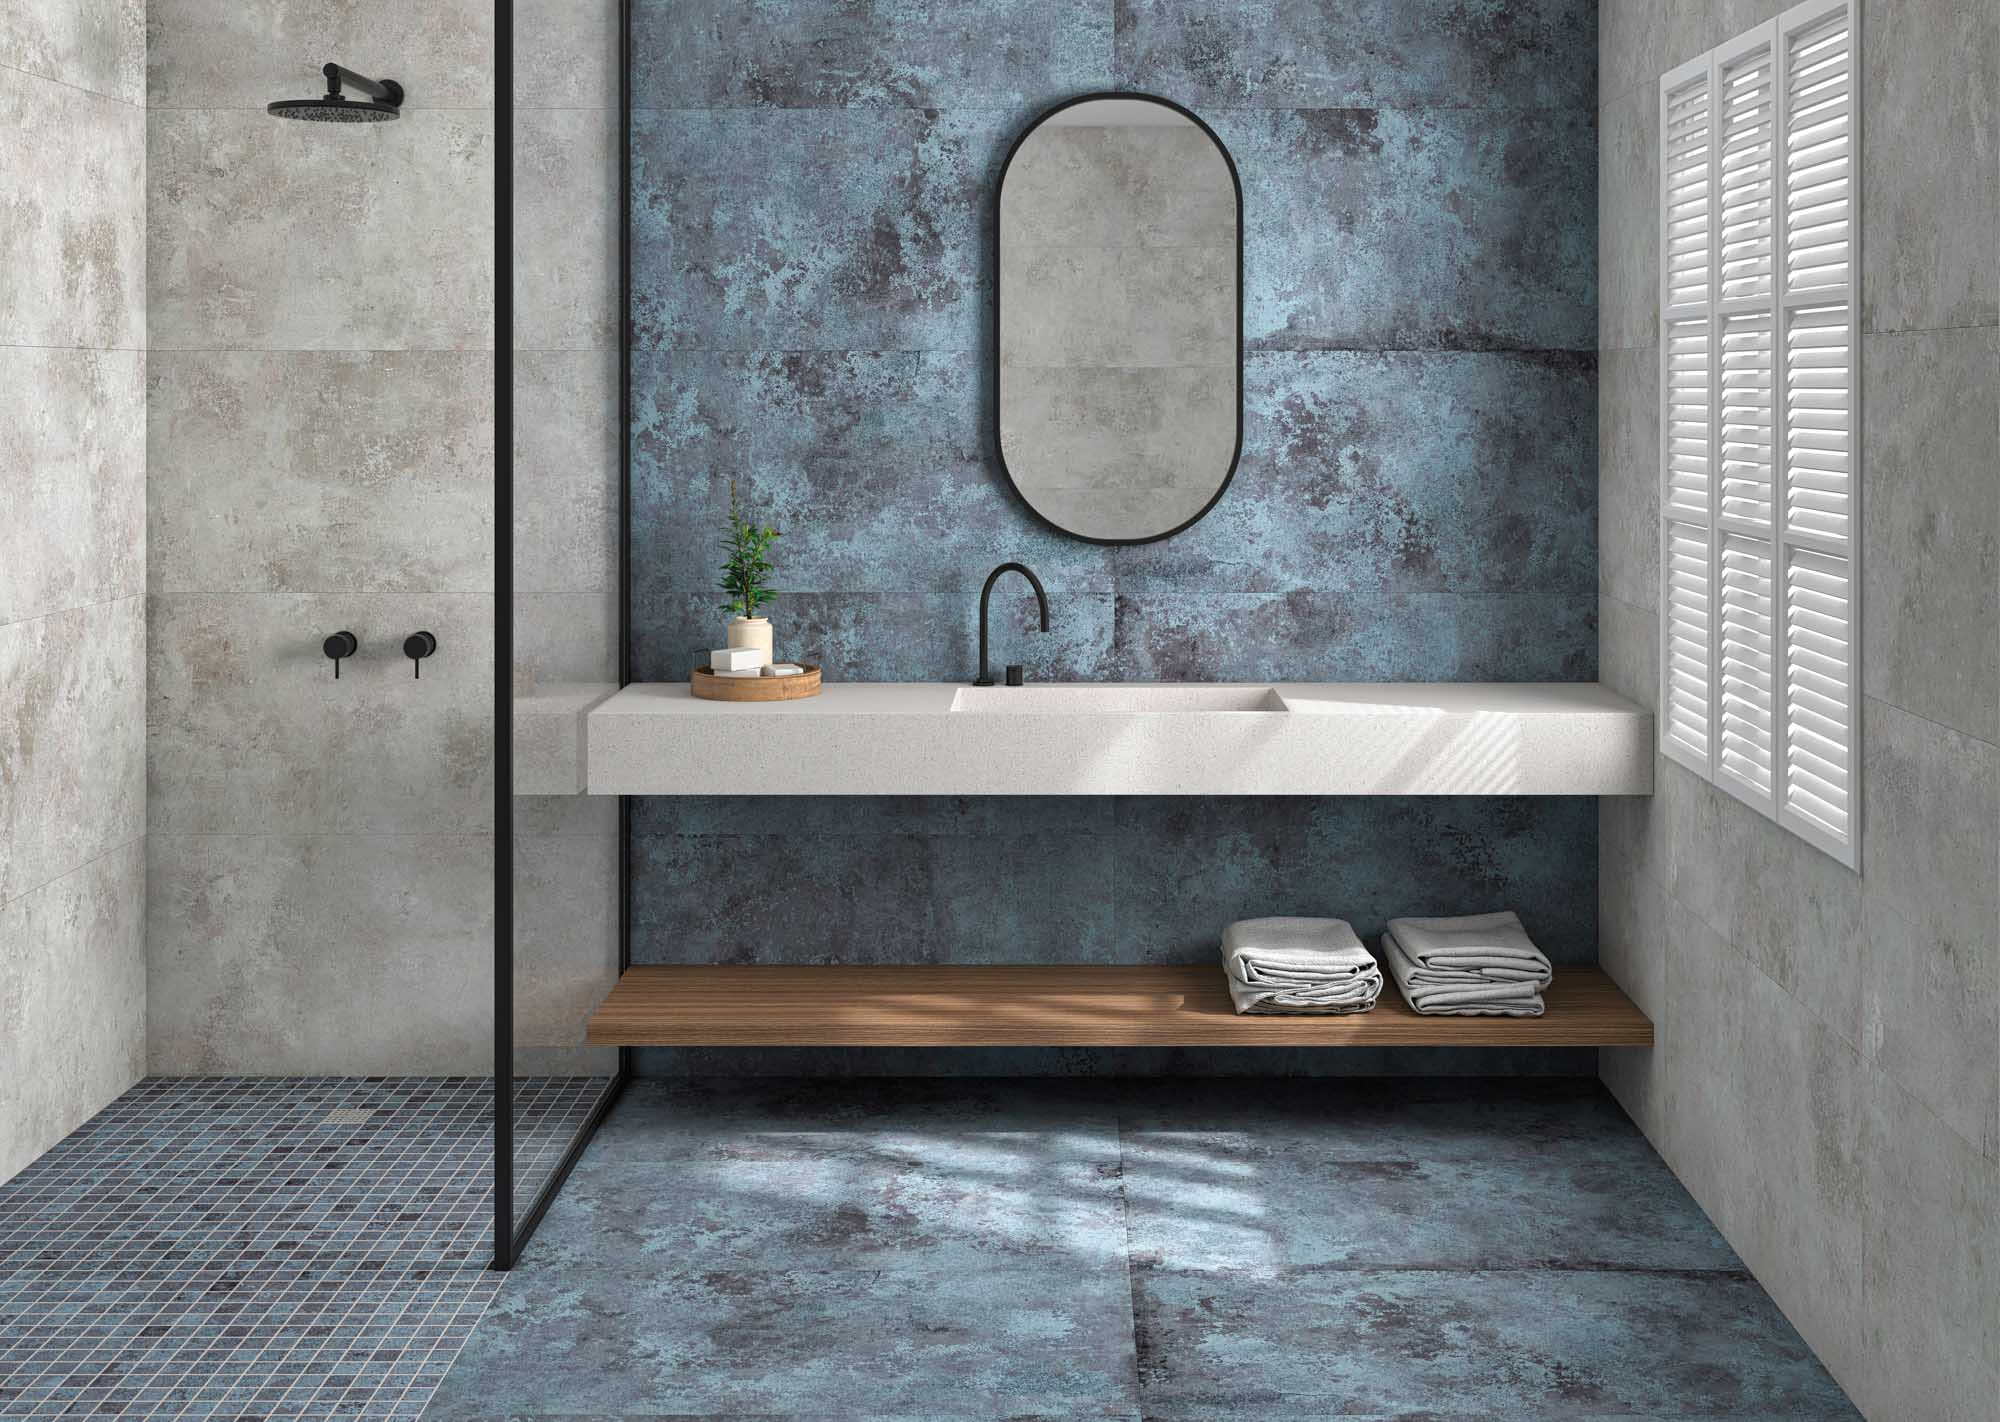 baño rústico efecto cemento en tono azul y gris